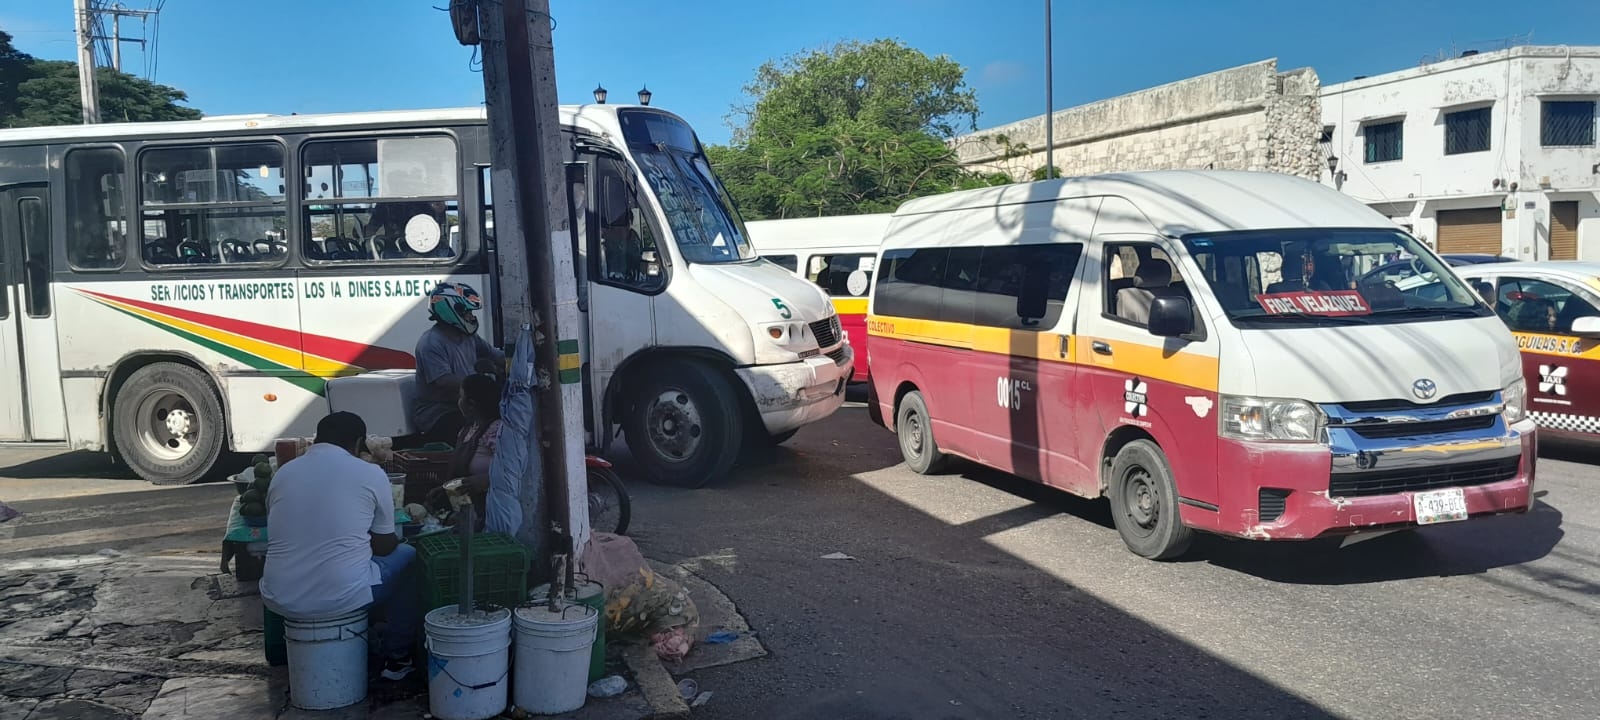 Choferes de transporte público se pelean tras involucrarse en un choque en Campeche